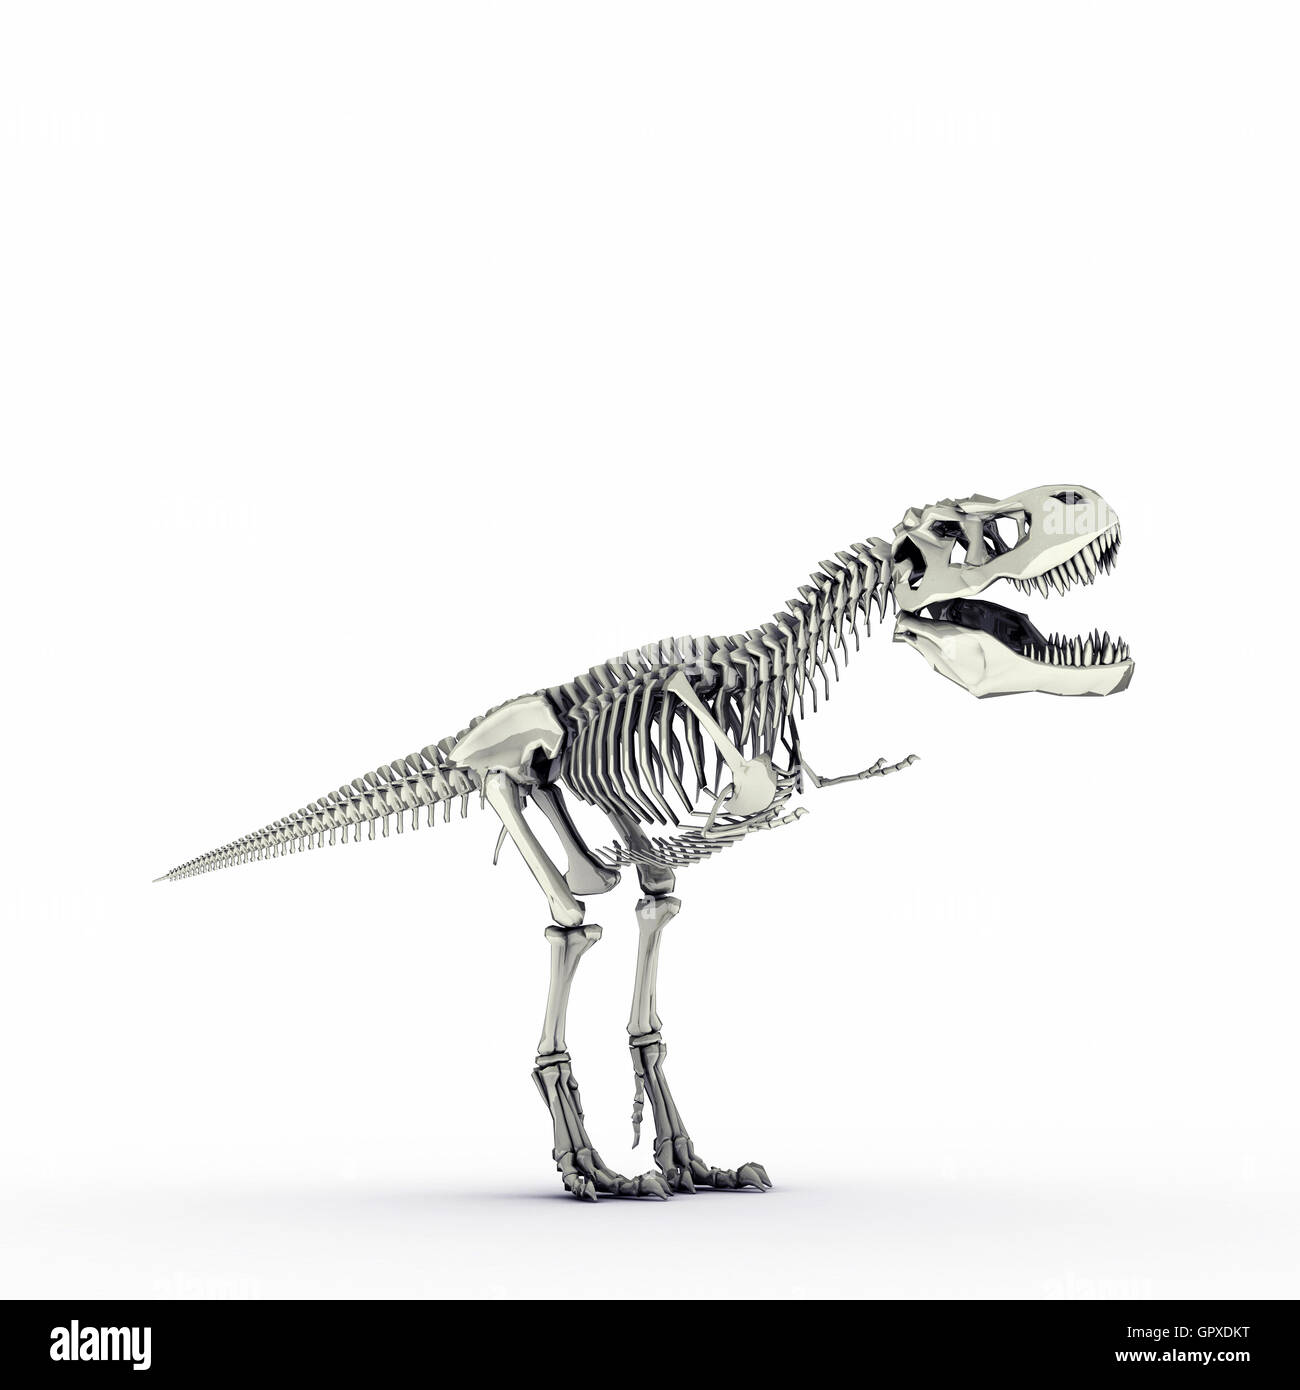 t-rex skeleton Stock Photo